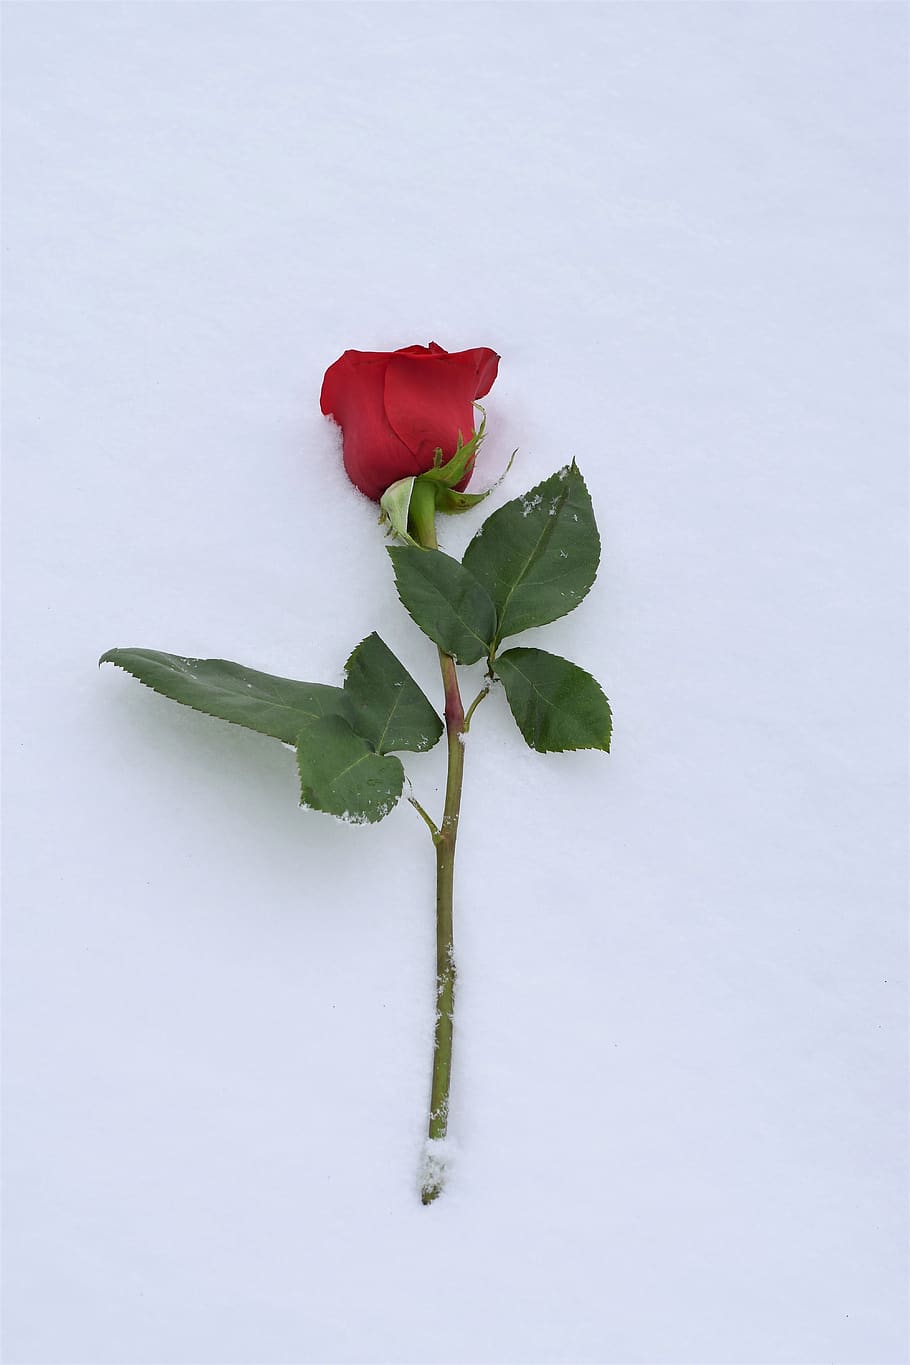 rosa roja en la nieve, símbolo de amor, el verdadero amor nunca muere, invierno, nevado, romántico, frío, heladas, al aire libre, flor